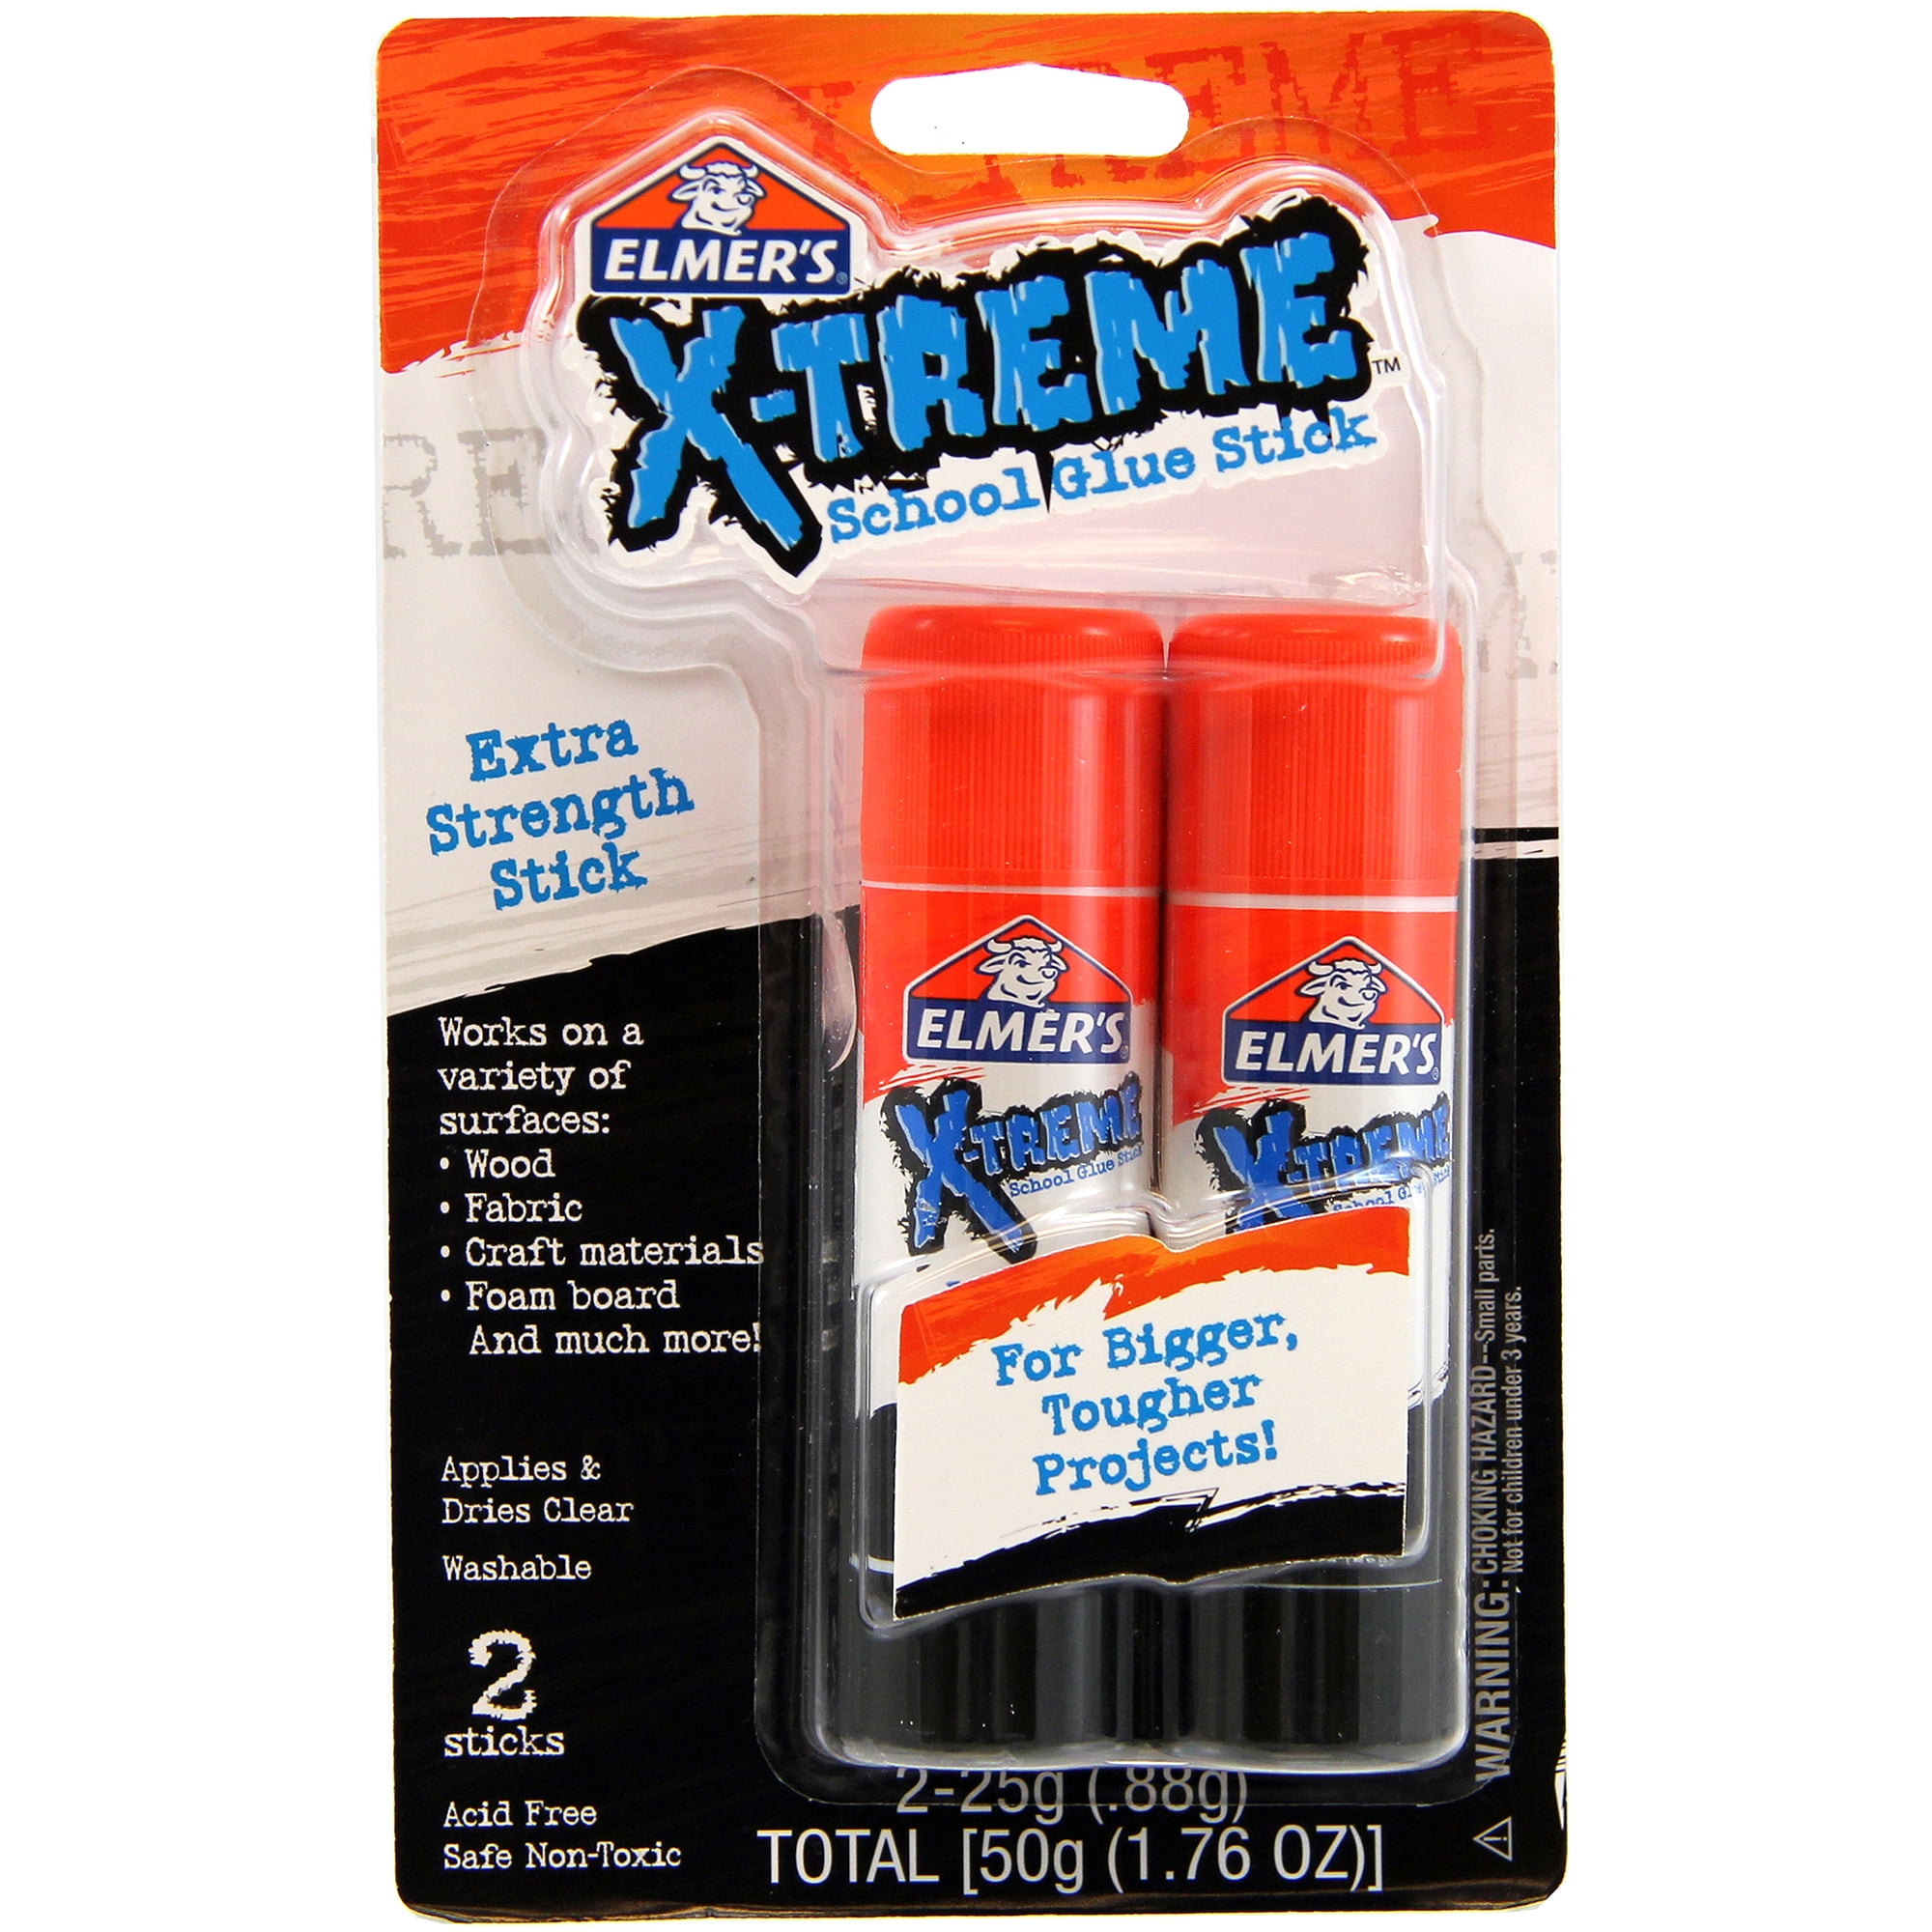 Elmers Extra Strength School Glue Sticks 6 Gm Pack Of 4 Sticks